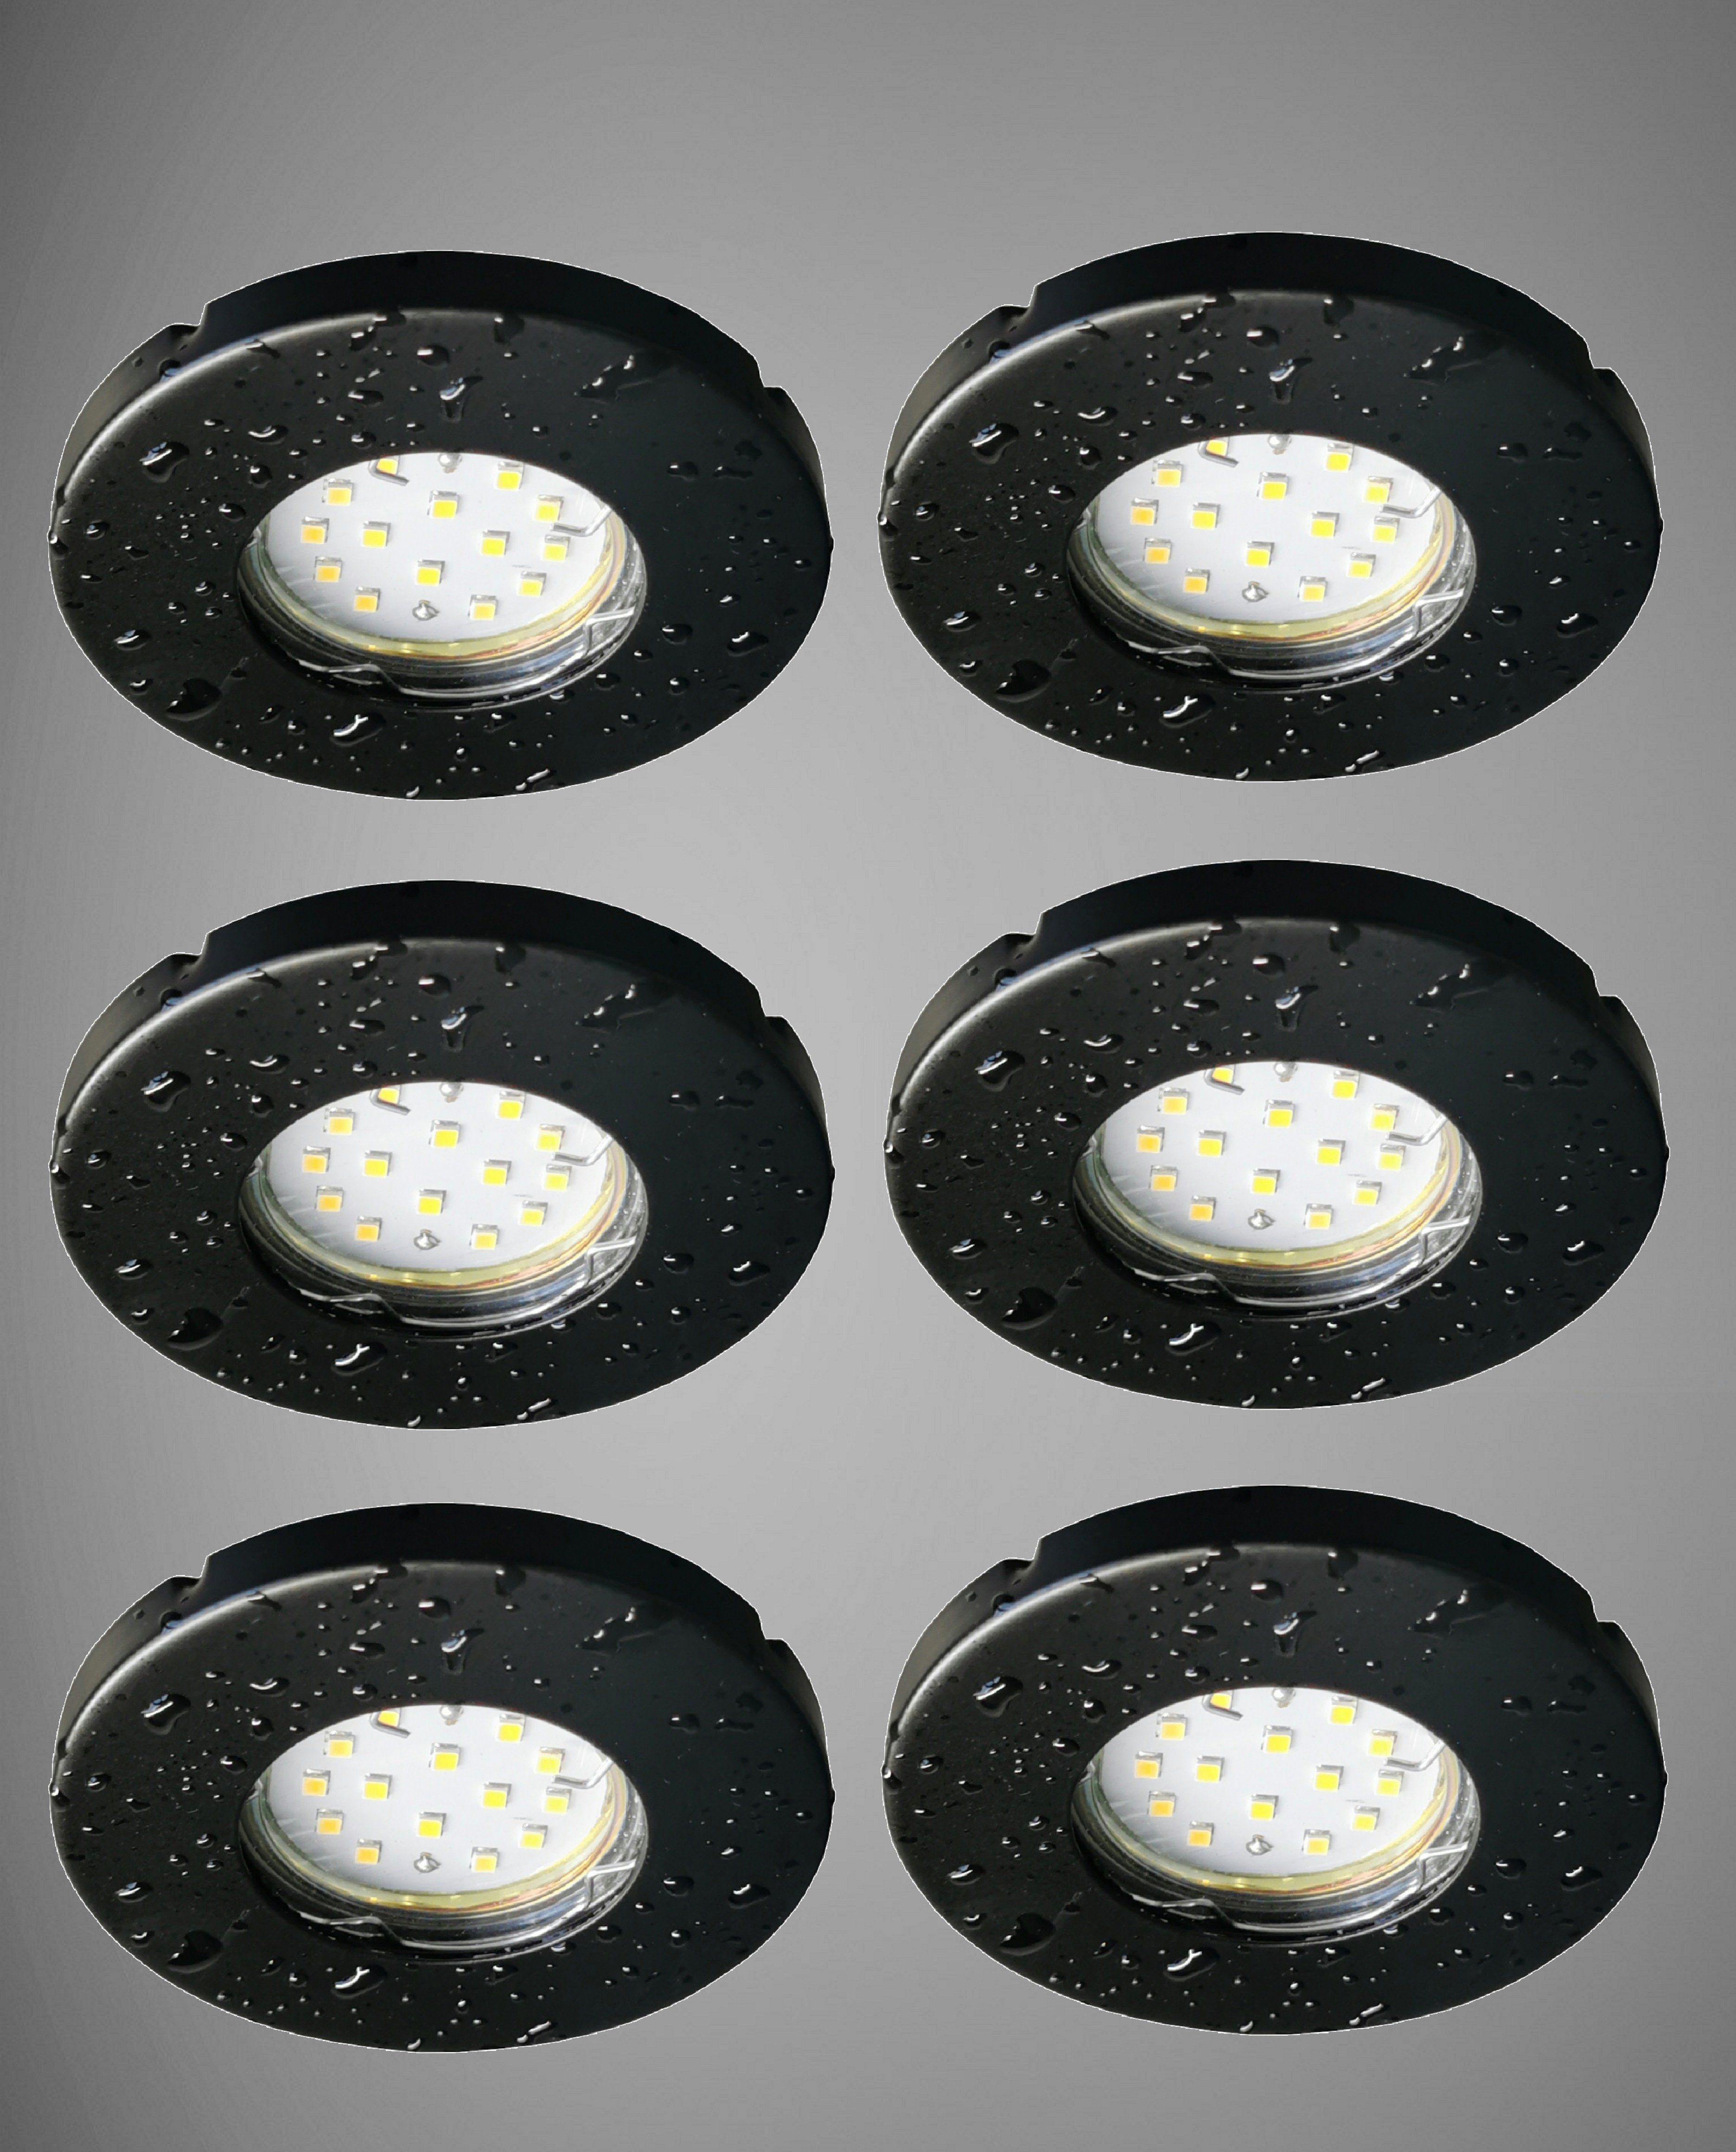 TRANGO LED LED Einbaustrahler 6er 5 warmweiß Set Modul Badleuchte Einbaustrahler, Watt für inkl. Bad, Ultra LED Deckenlampe, Flach Deckenstrahler, 6729IP-065MO Dusche, Schwarz matt 6x Einbauspots, 3000K IP44